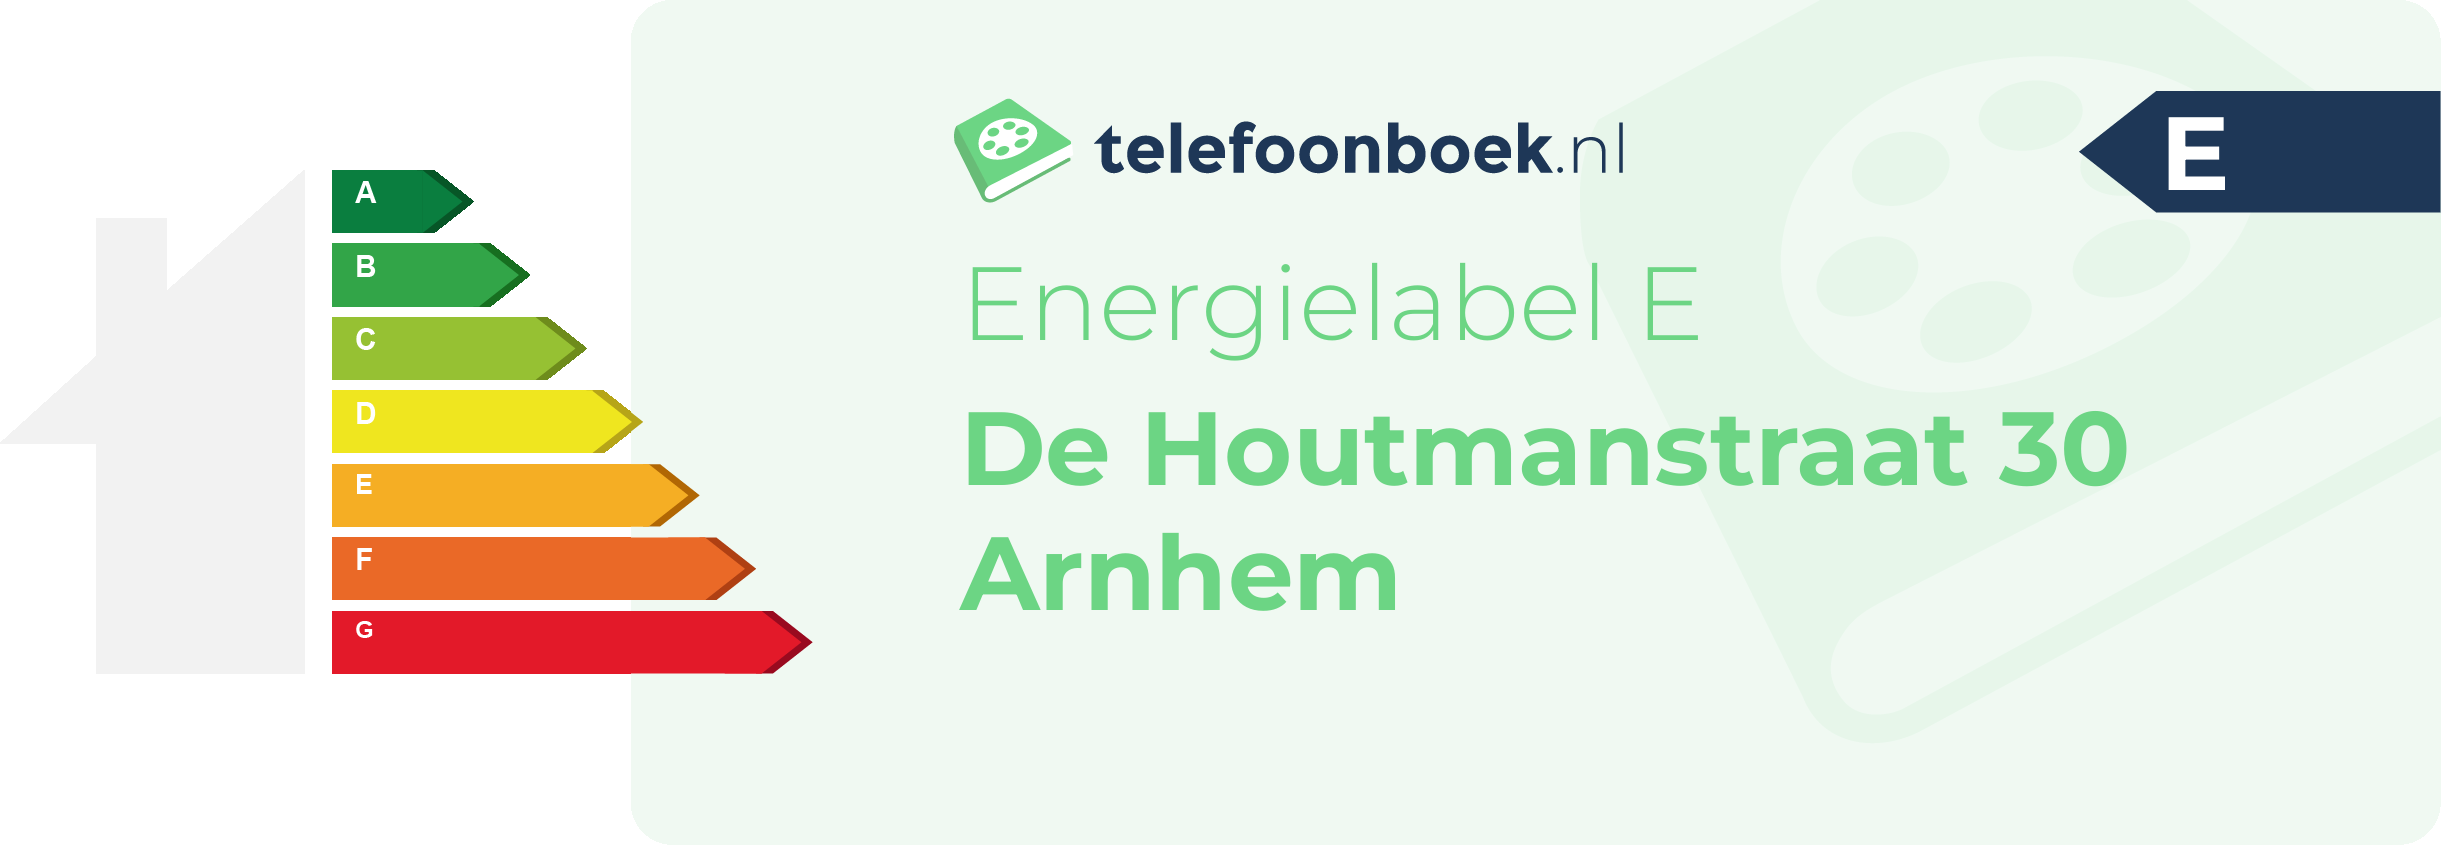 Energielabel De Houtmanstraat 30 Arnhem